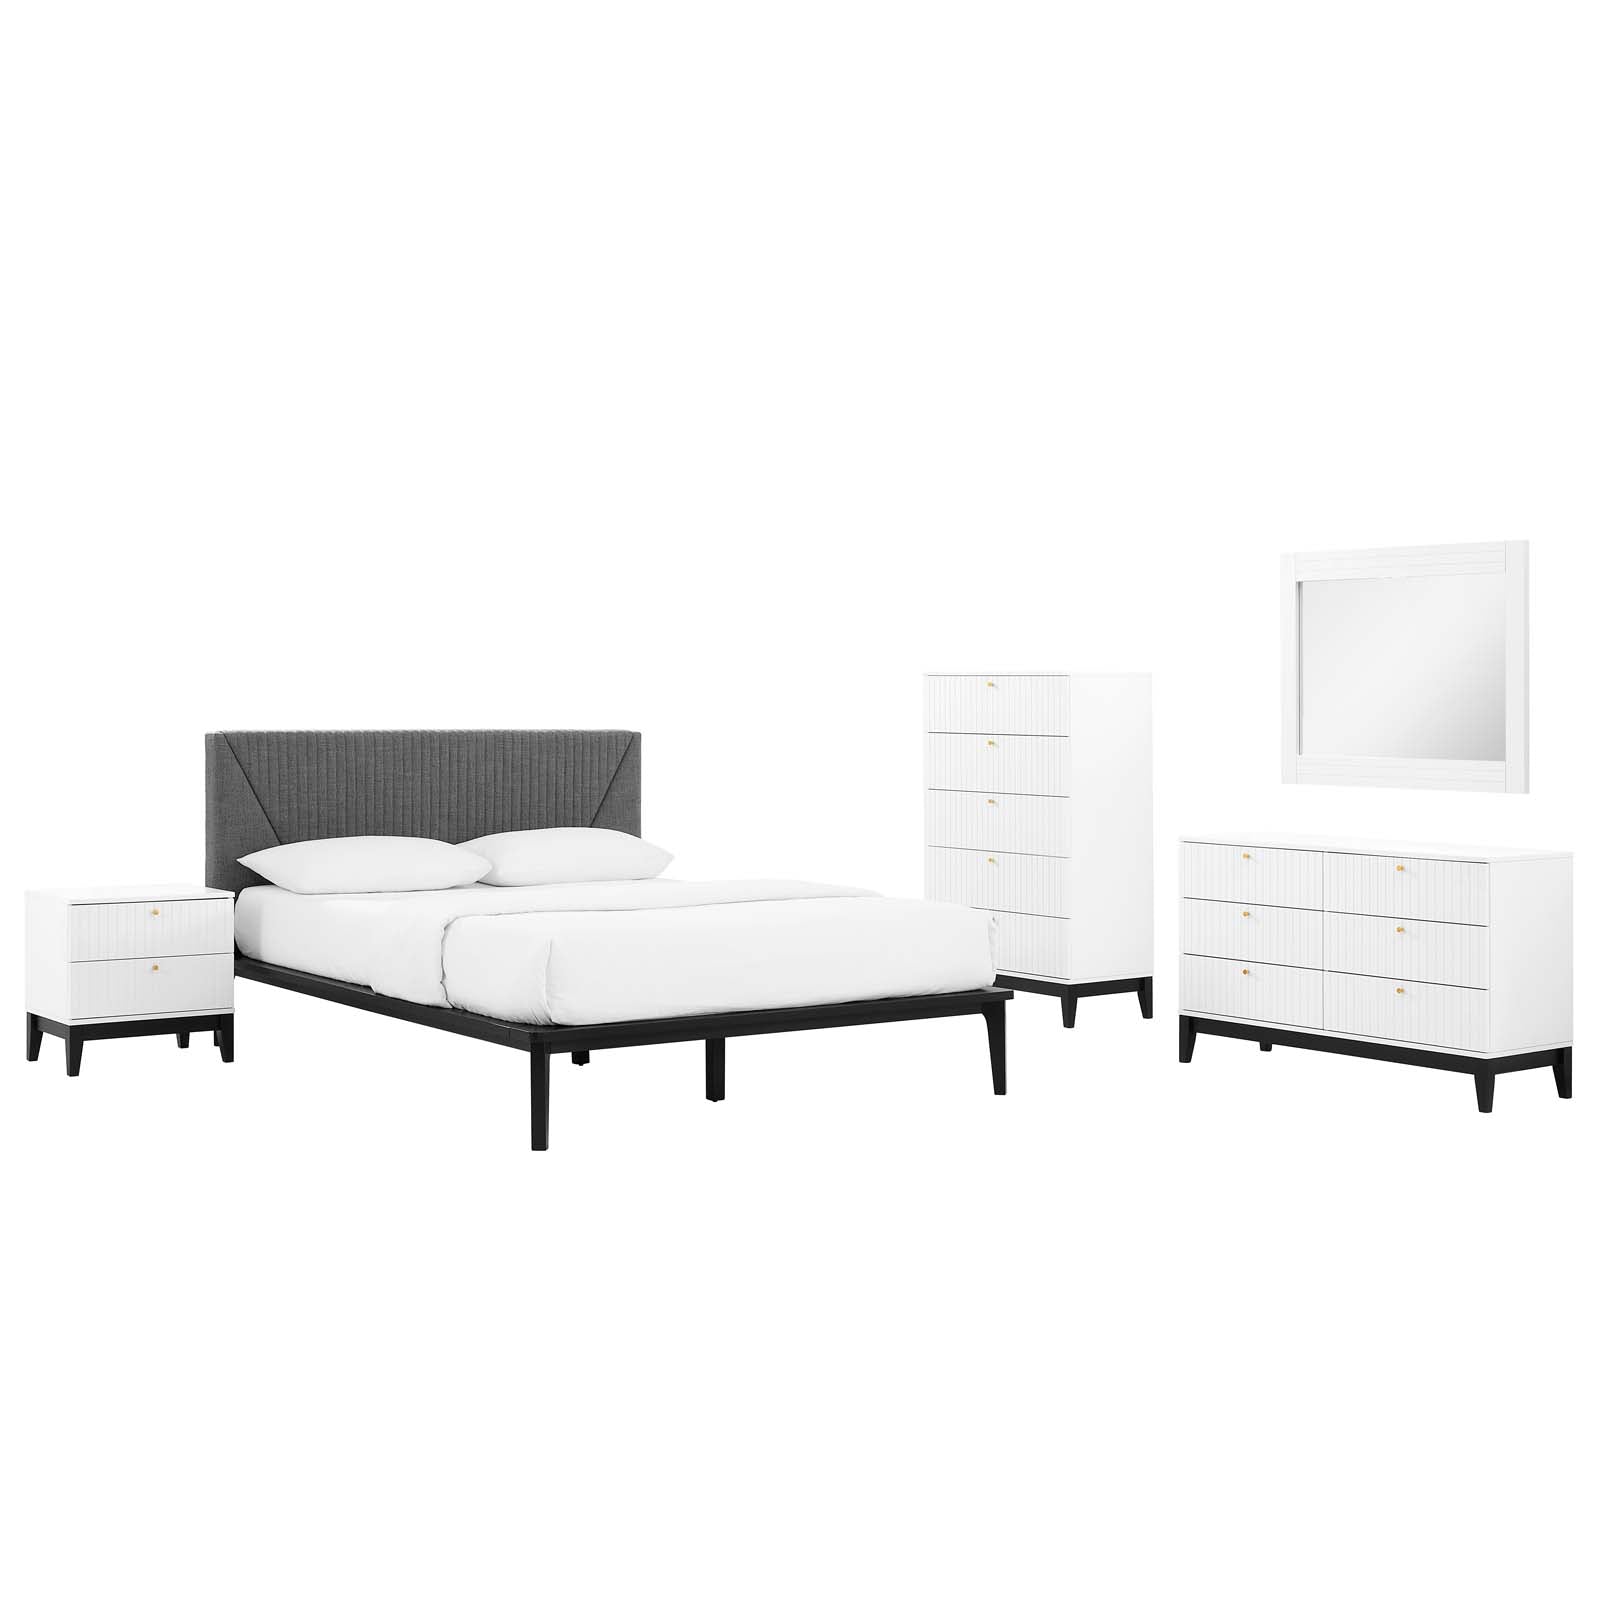 Dakota 5 Piece Upholstered Bedroom Set - East Shore Modern Home Furnishings